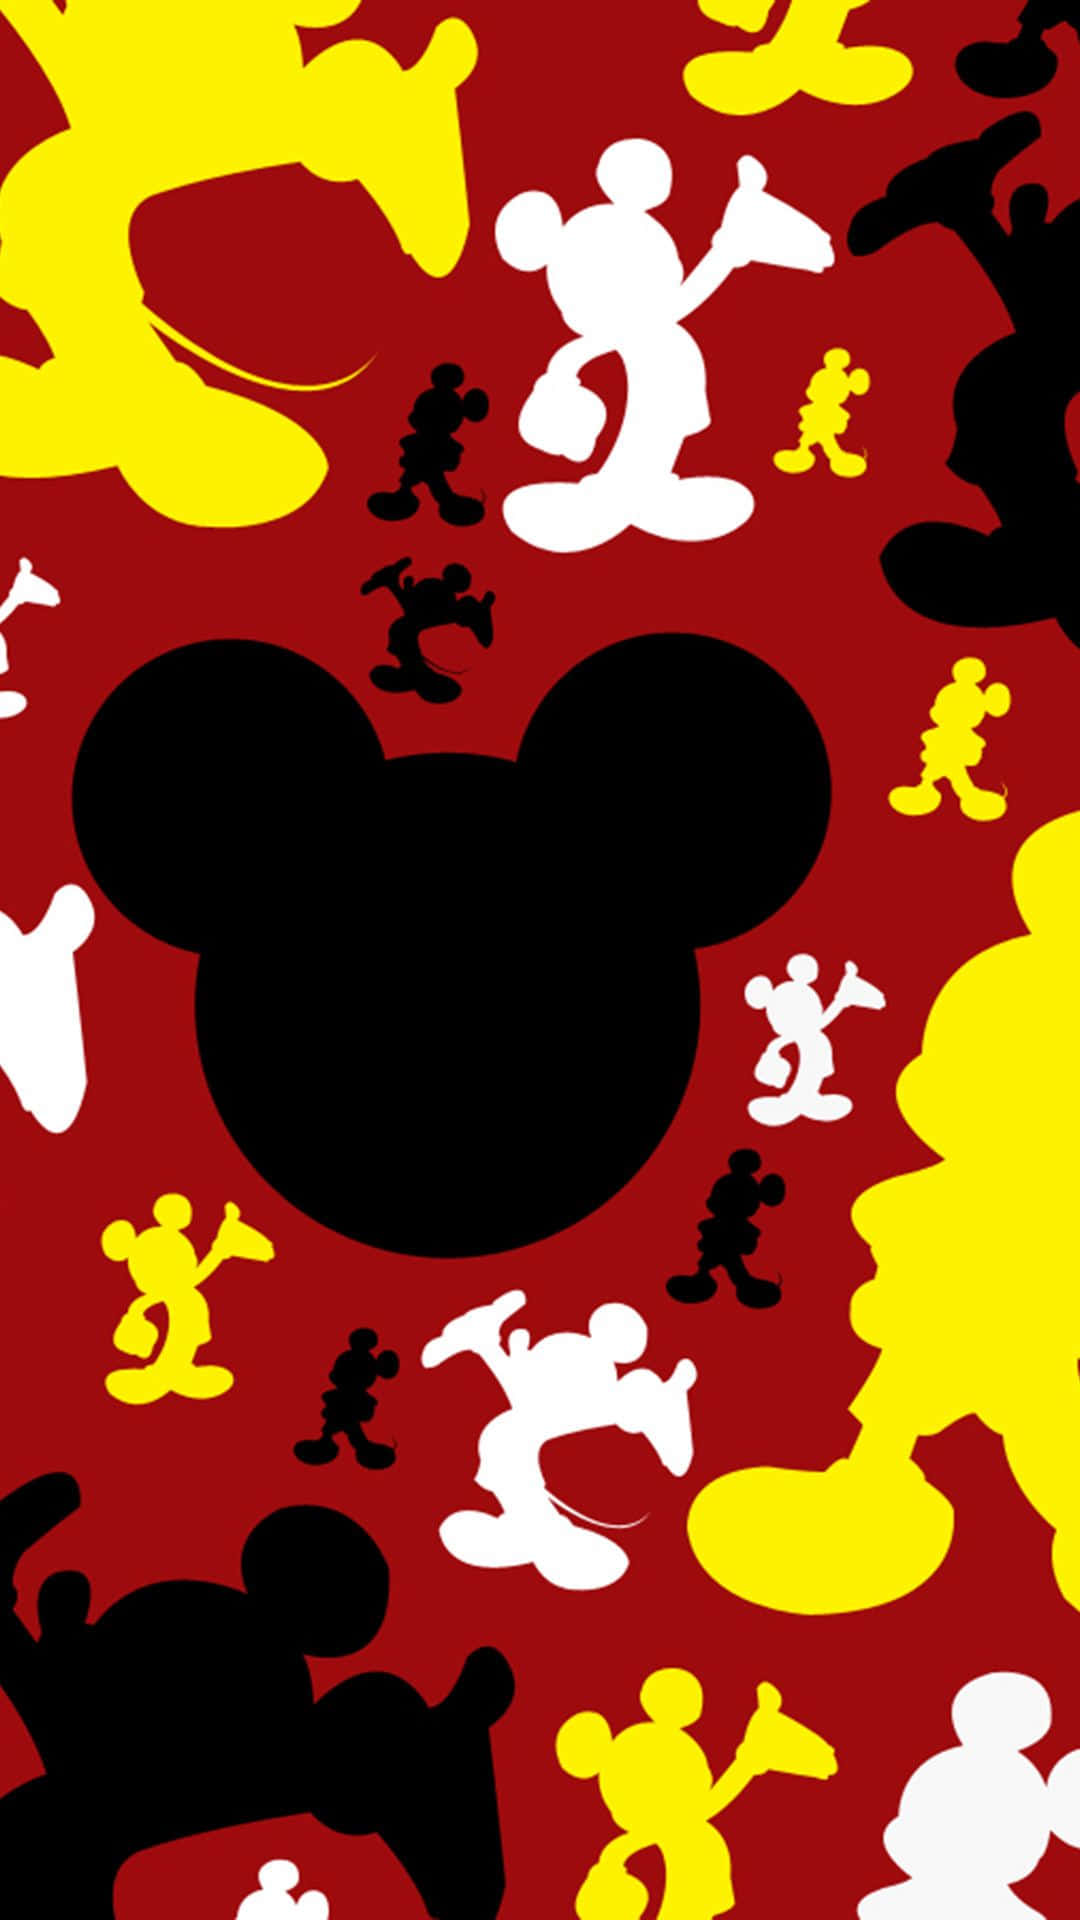 Firadin Inre Unge Med Mickey Mouse-öron På Din Dator Eller Mobilbakgrund! Wallpaper